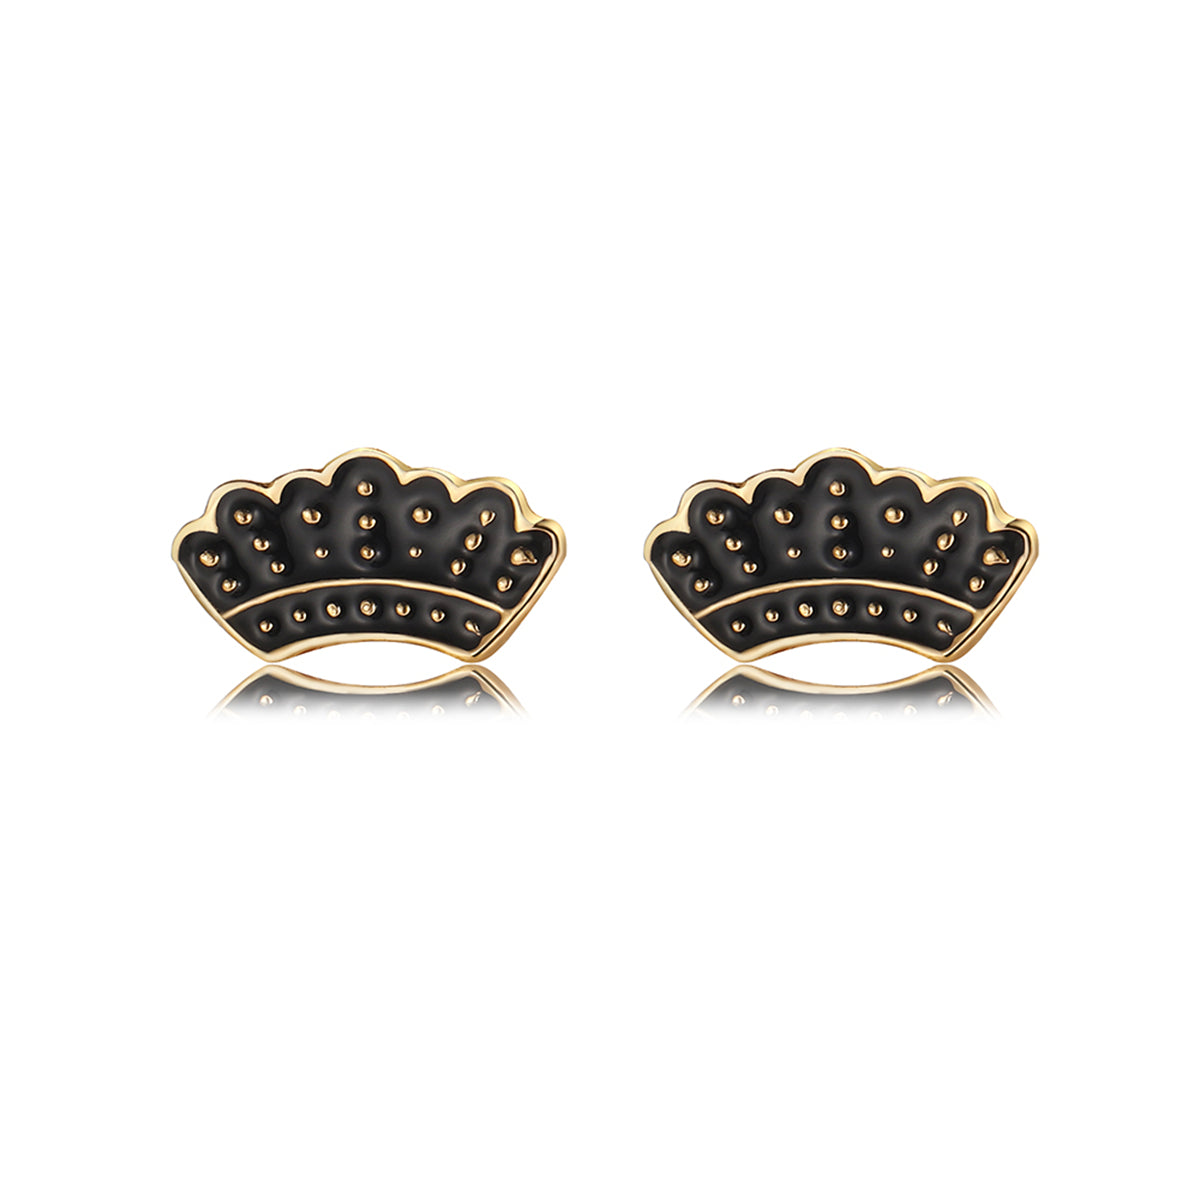 18K Gold-Plated & Black Enamel Crown Stud Earrings